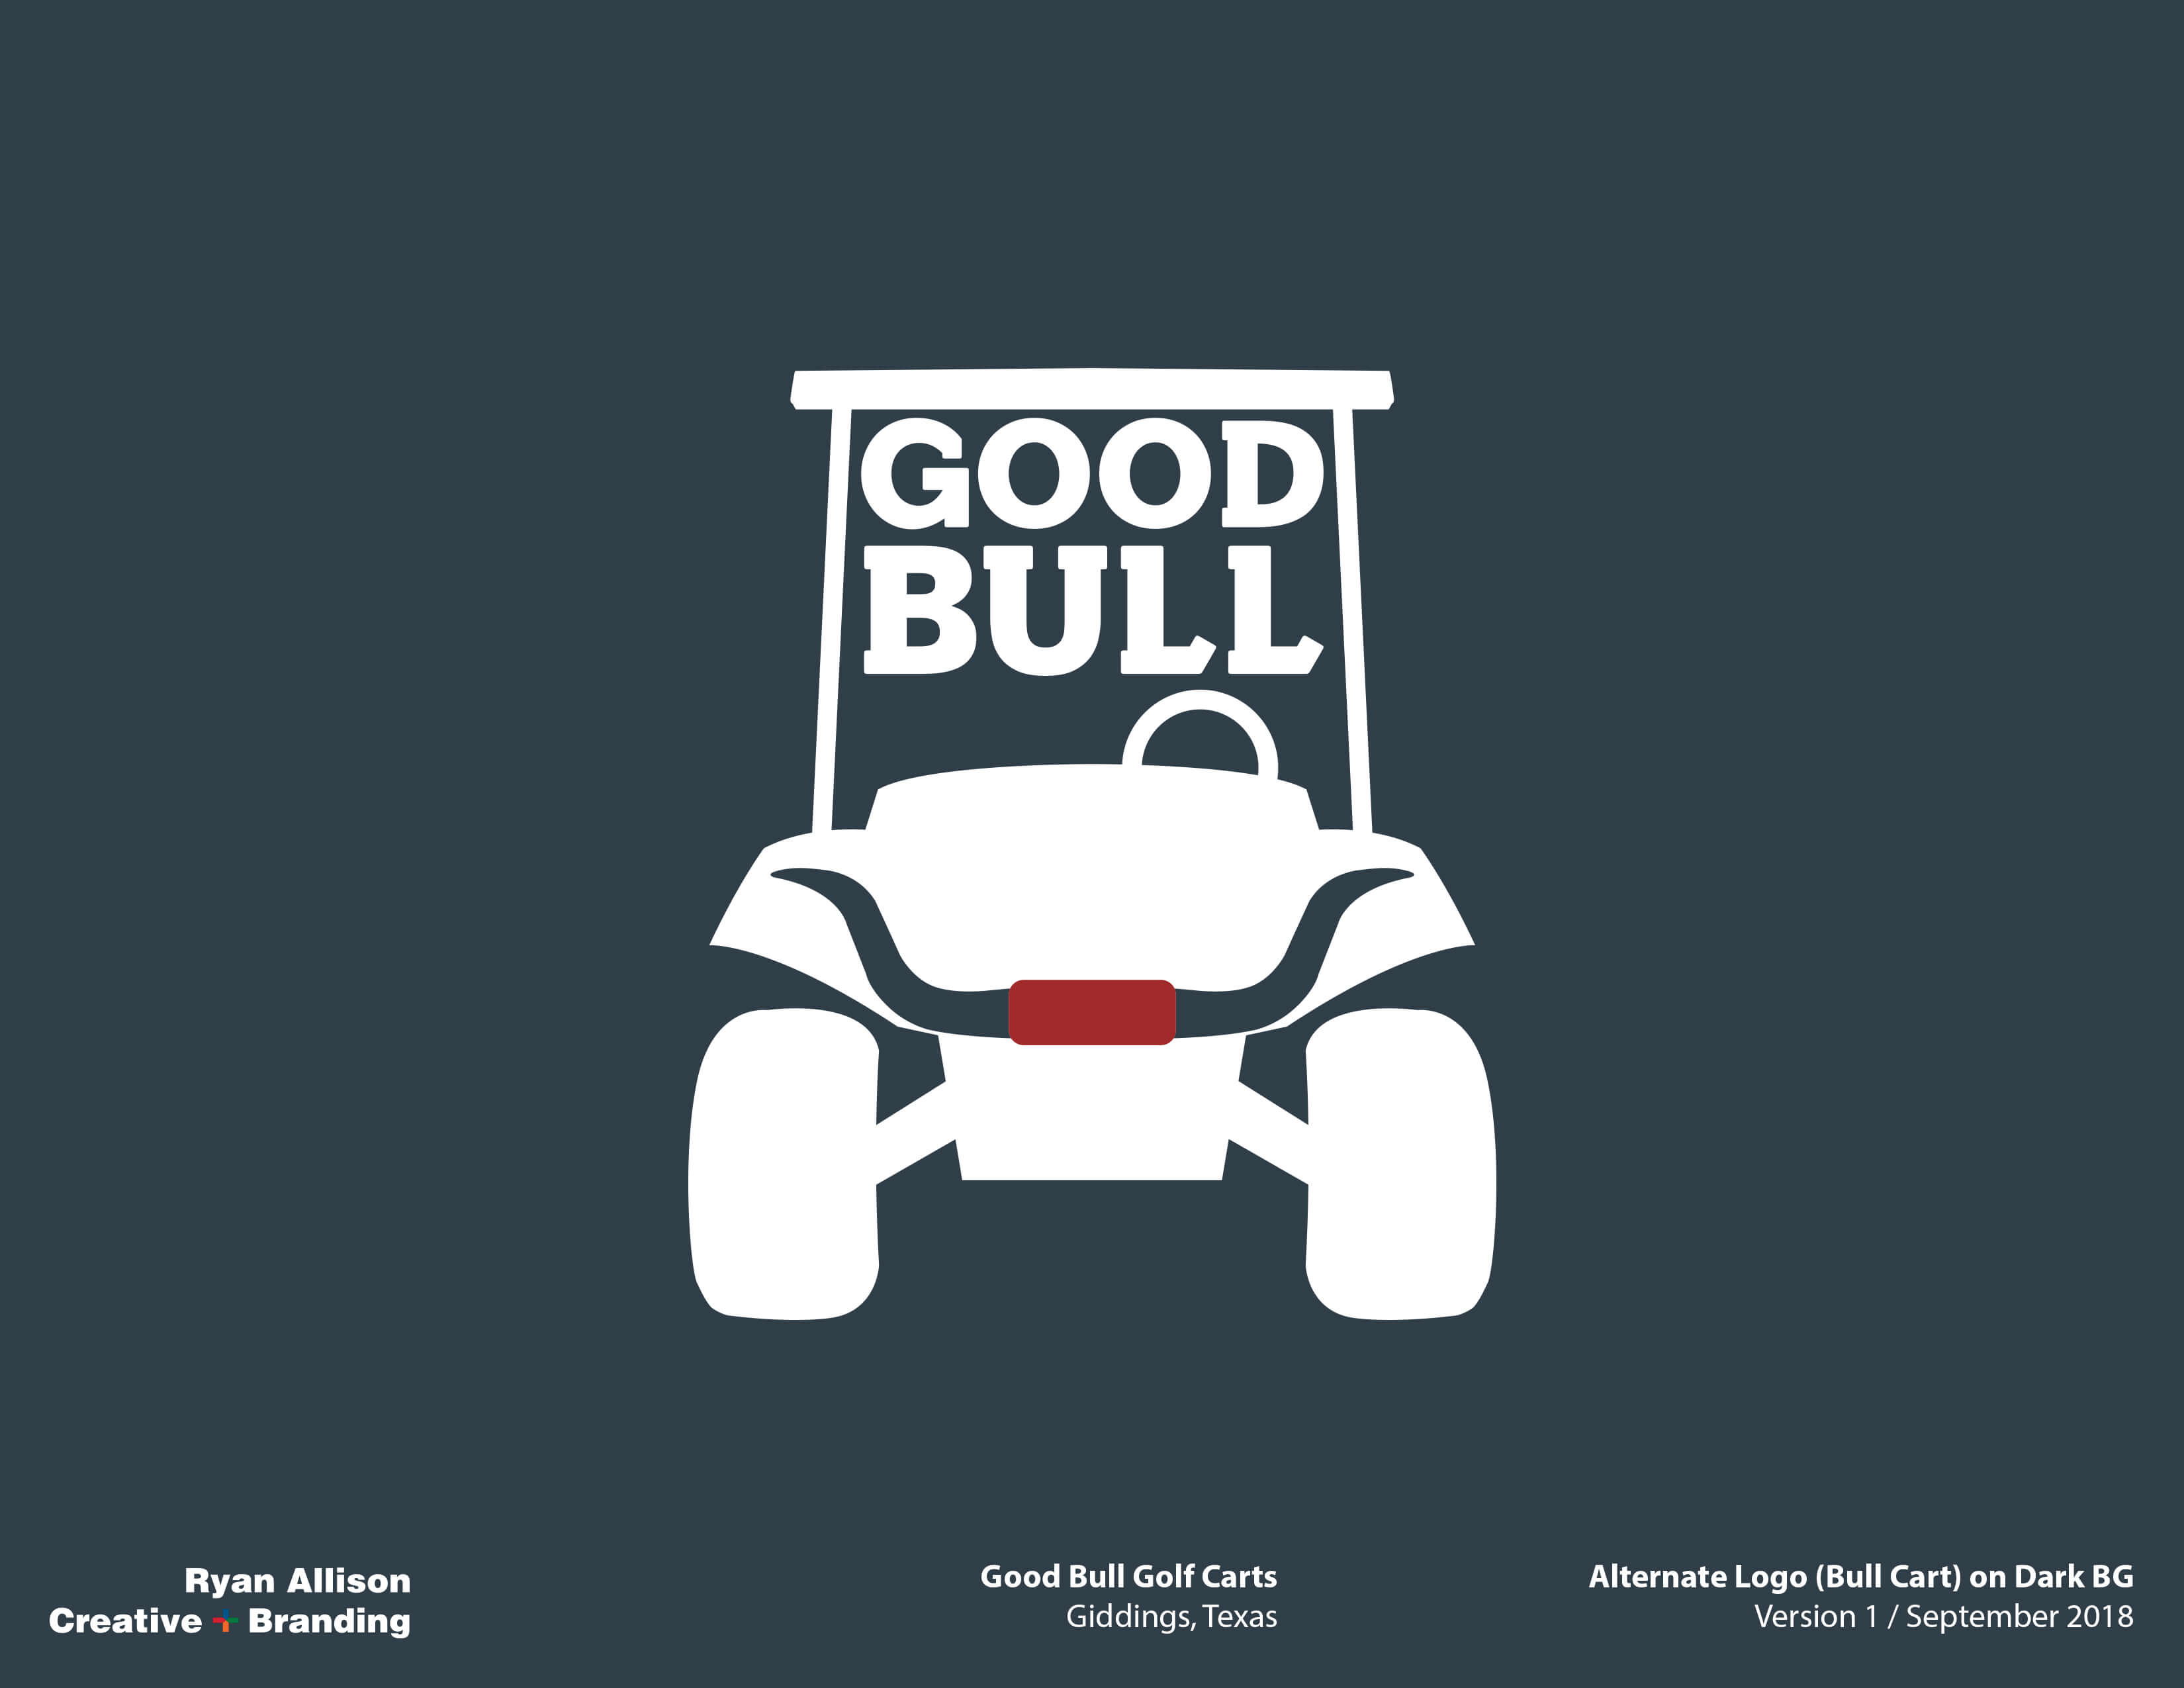 Good Bull Golf Carts Alternate Logo (Bull Cart) on Dark BG - Logo - Ryan Allison Creative + Branding